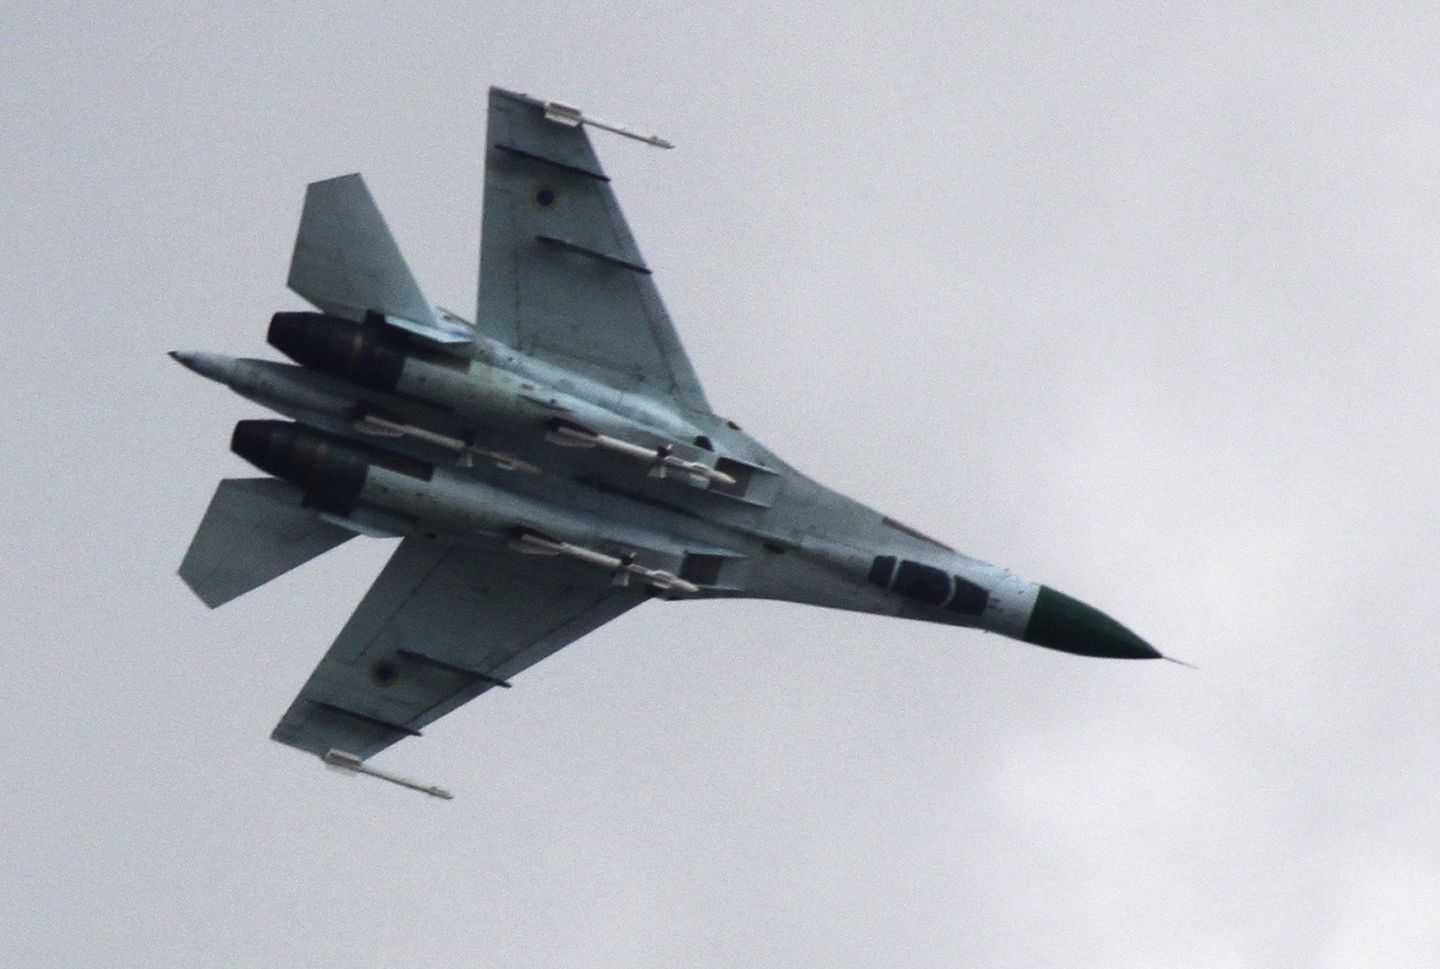 Ukraynalı flyboys, 'doğru şeyler' için savaşmanın onlara üstün Rus Hava Kuvvetlerine karşı avantaj sağladığını söylüyor